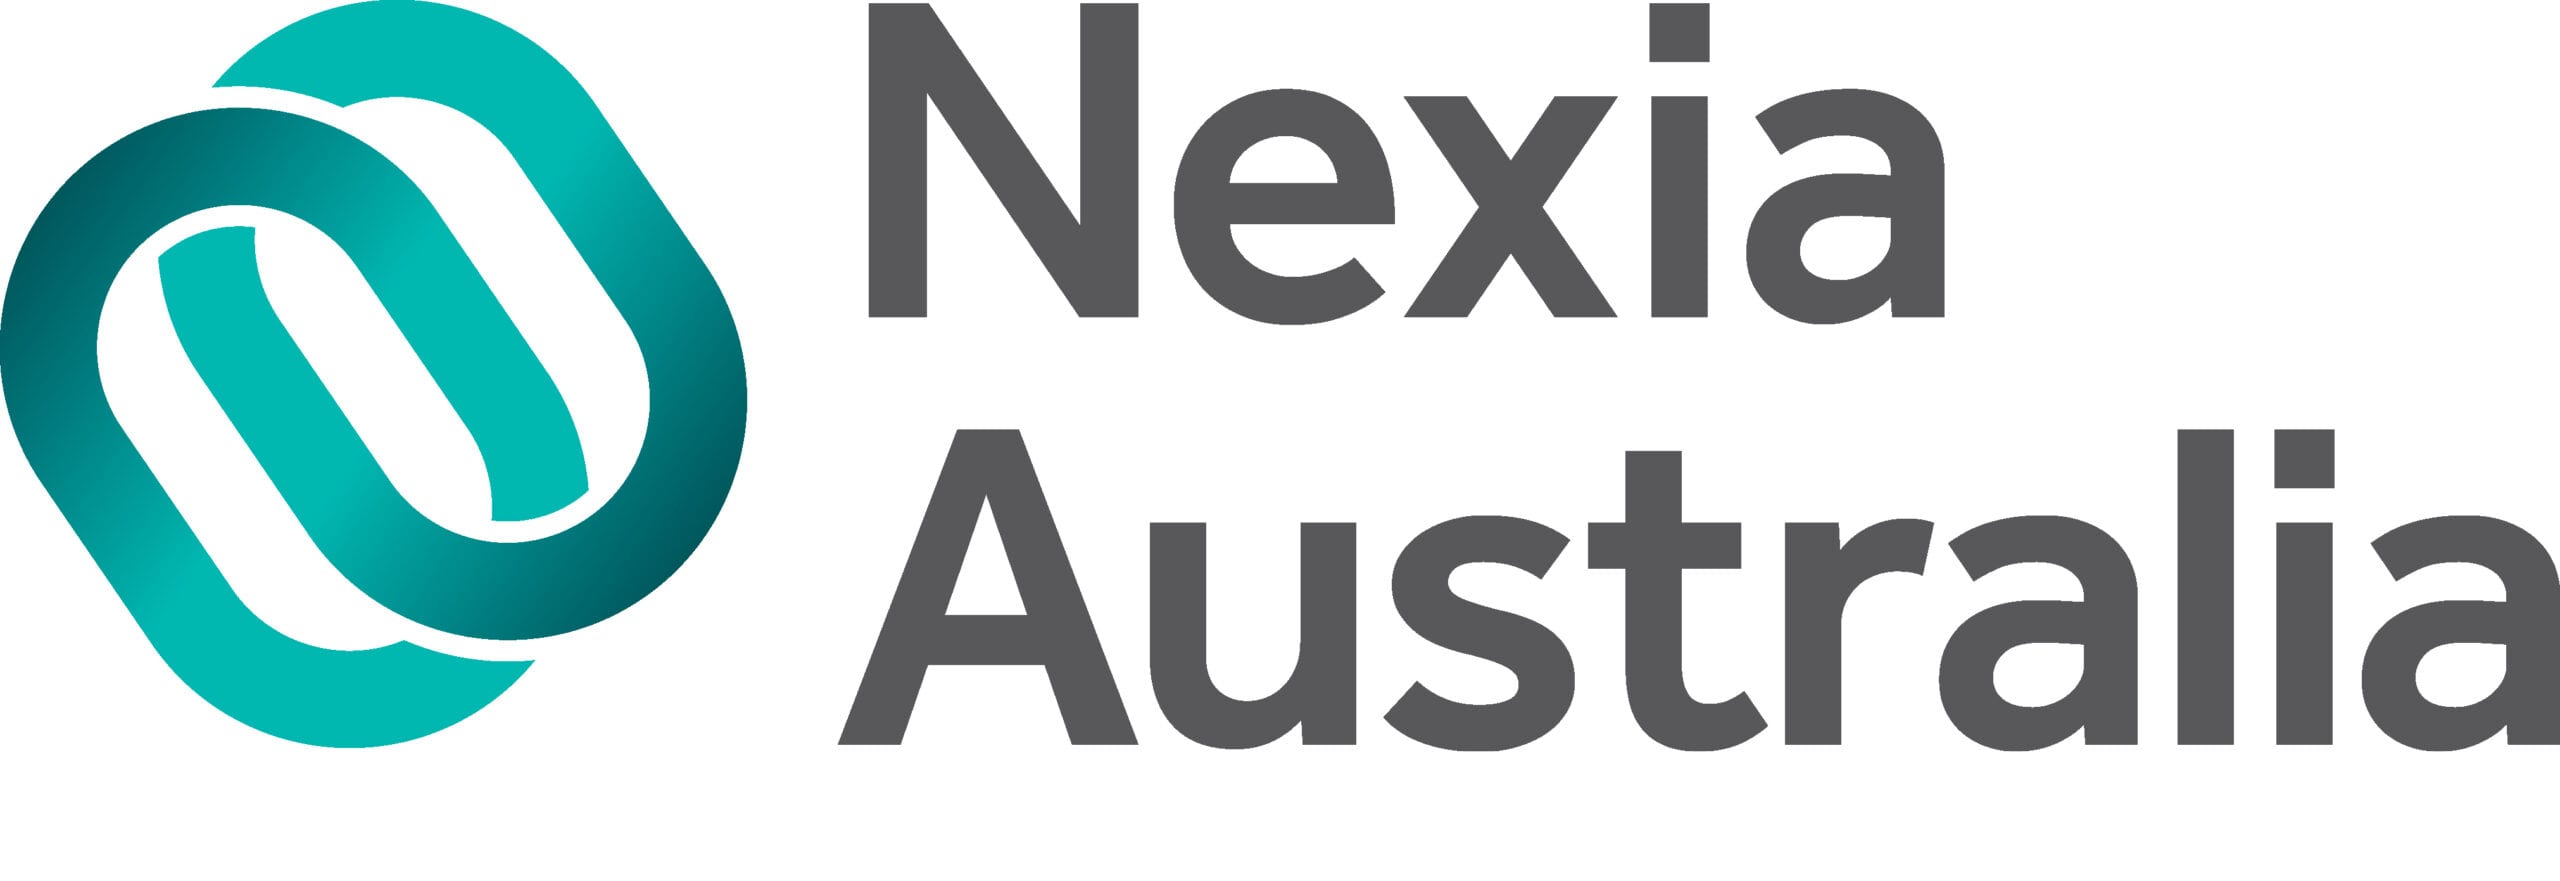 Nexia Sydney Financial Services